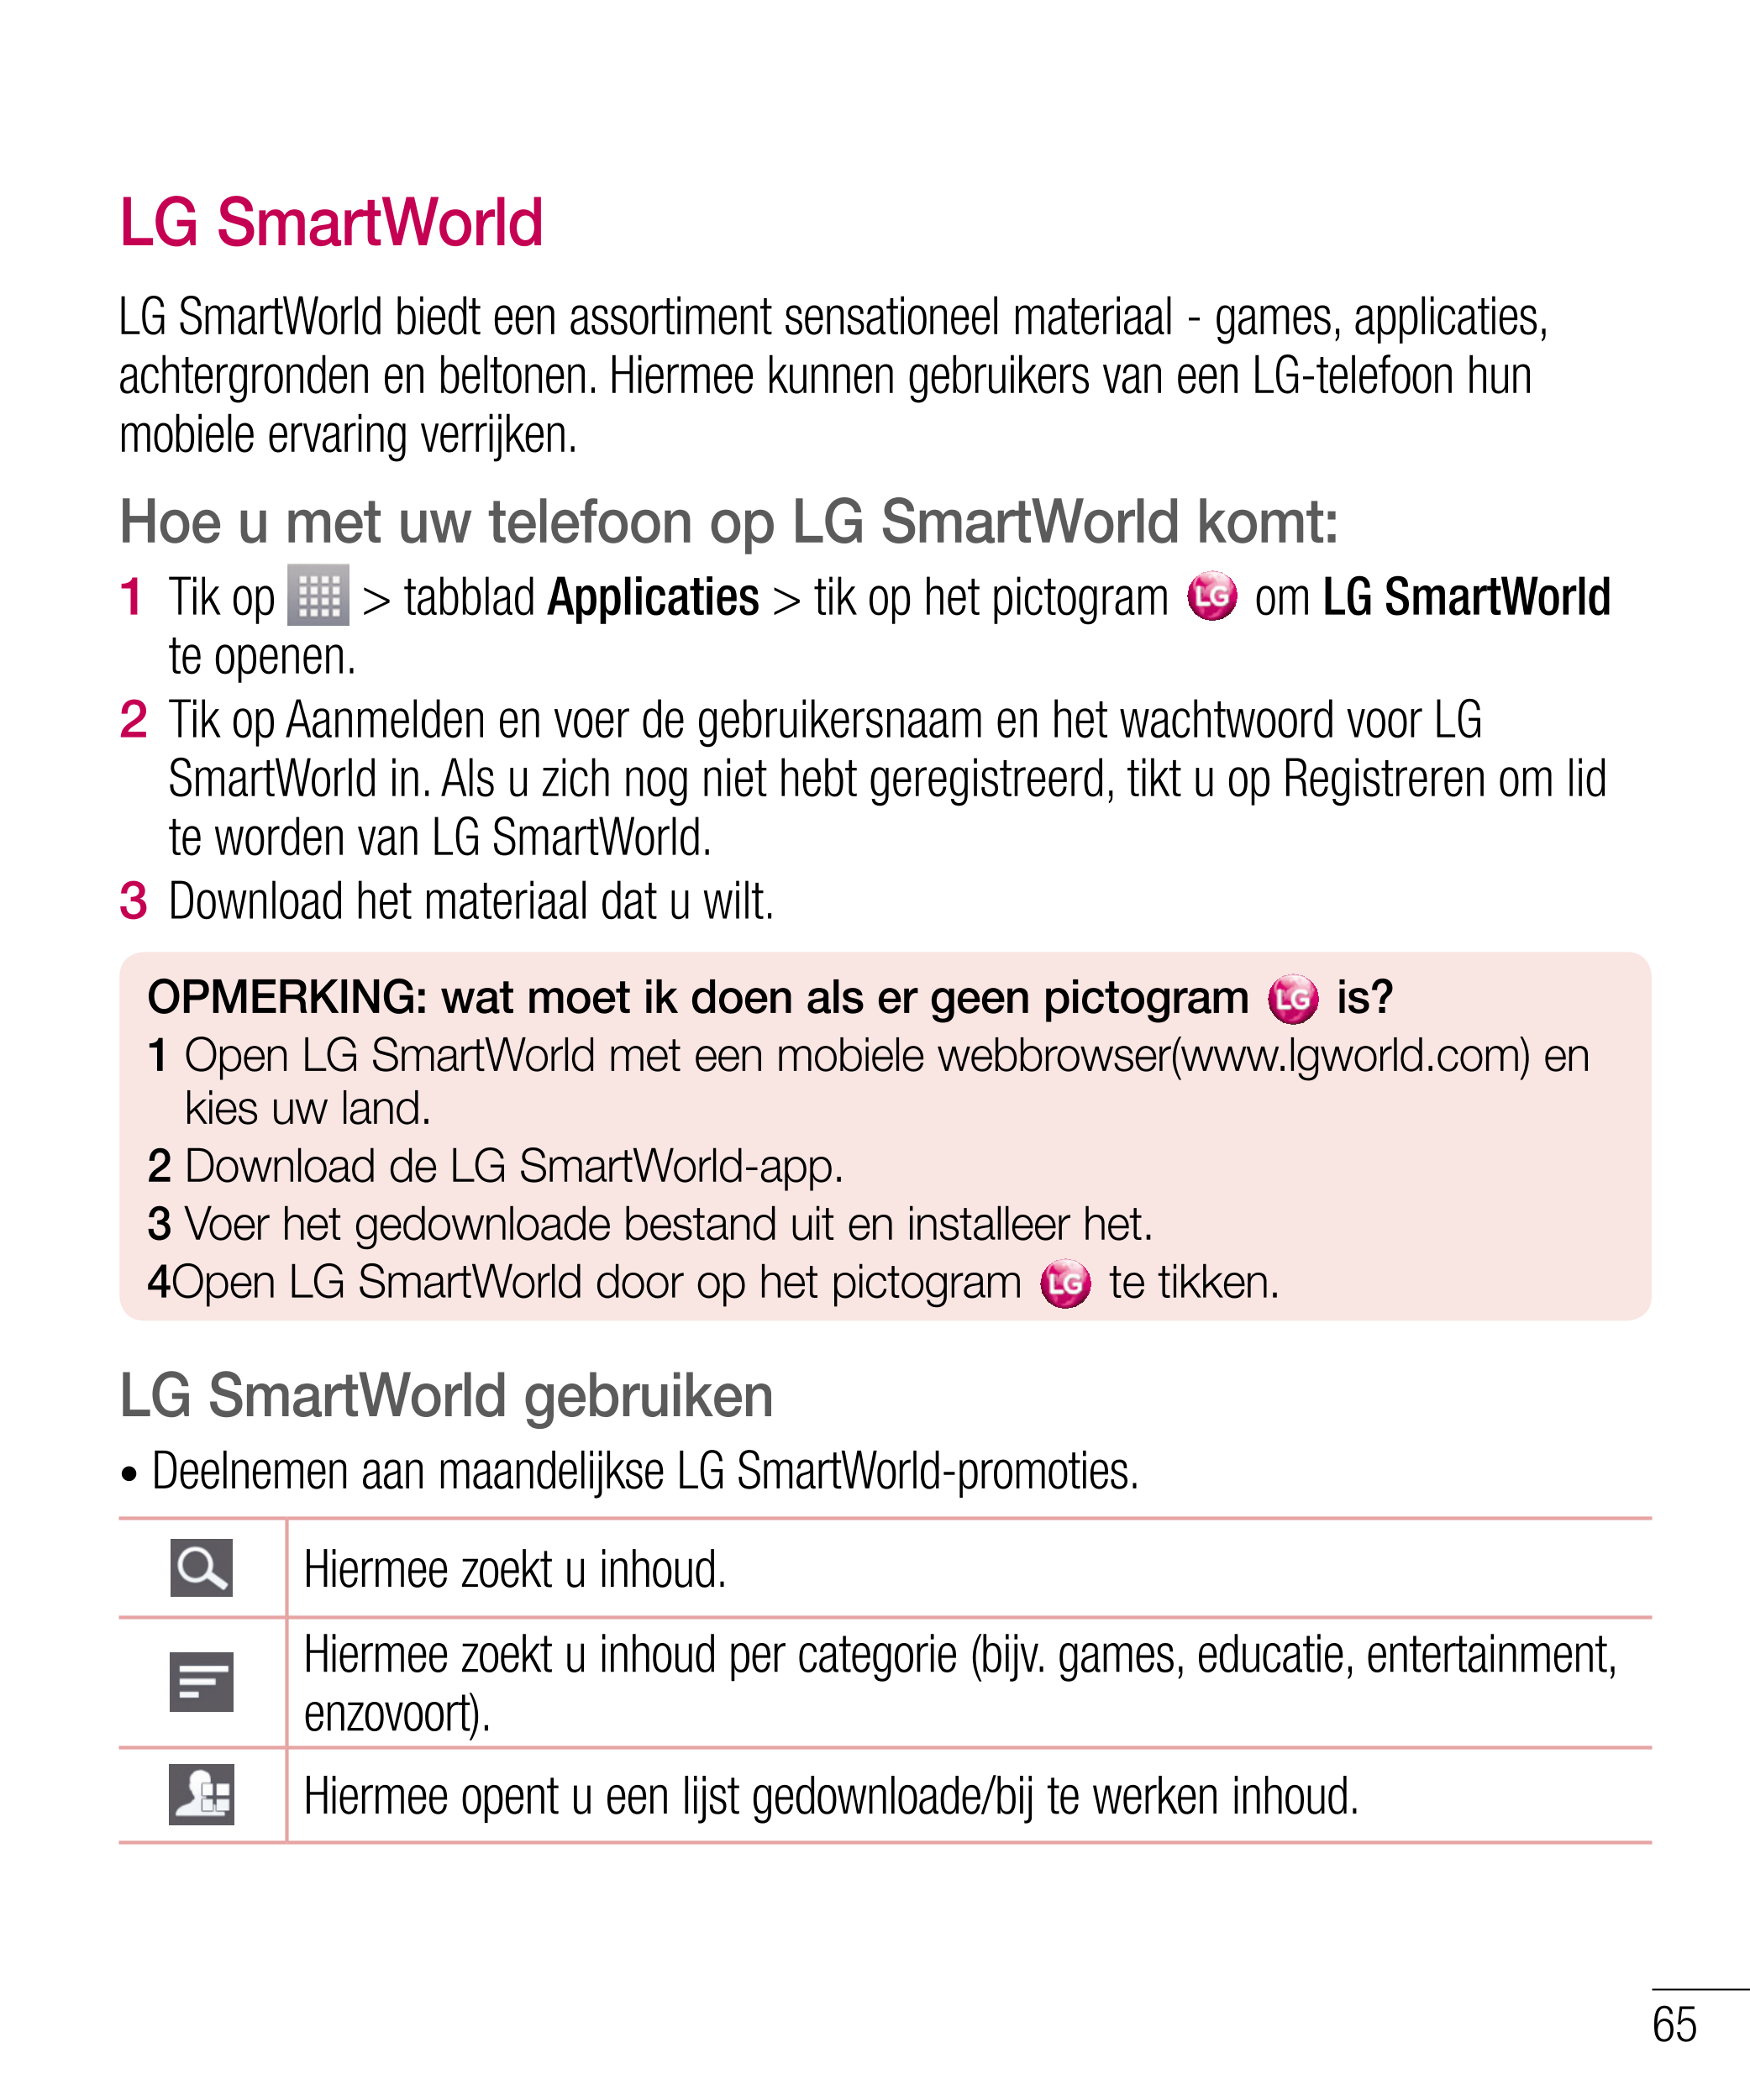 Unieke functie van LG
3  Tik op   in het menu Bewerken om  LG SmartWorld
de memo op te slaan met het huidige 
LG SmartWorld bied